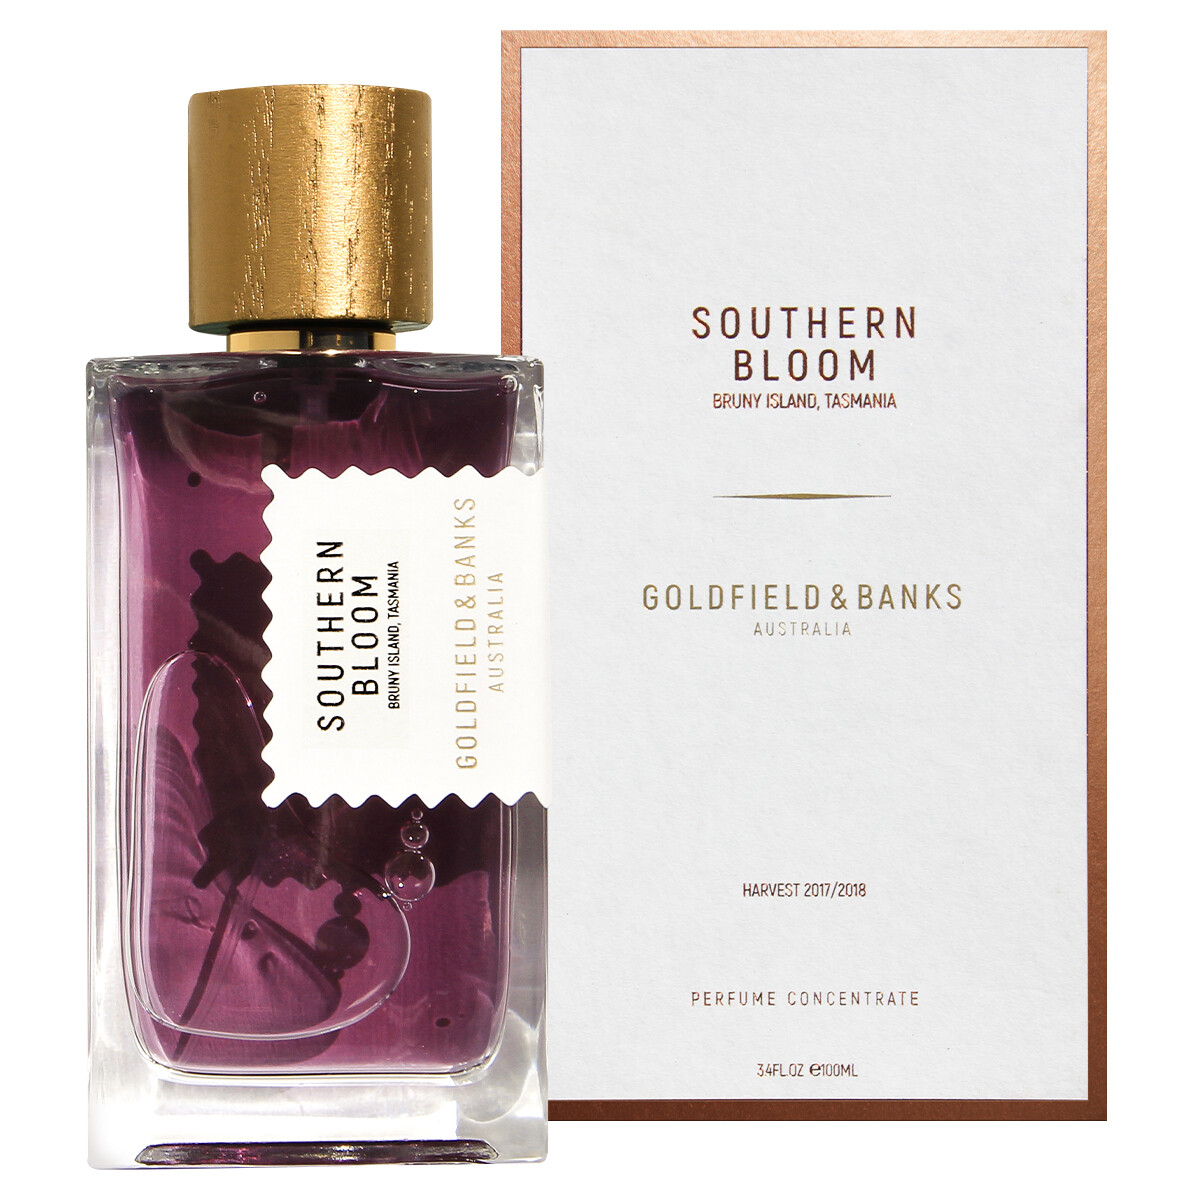 Luxus Parfum Goldfield und Banks Southern Bloom Parfum 100ml kaufen